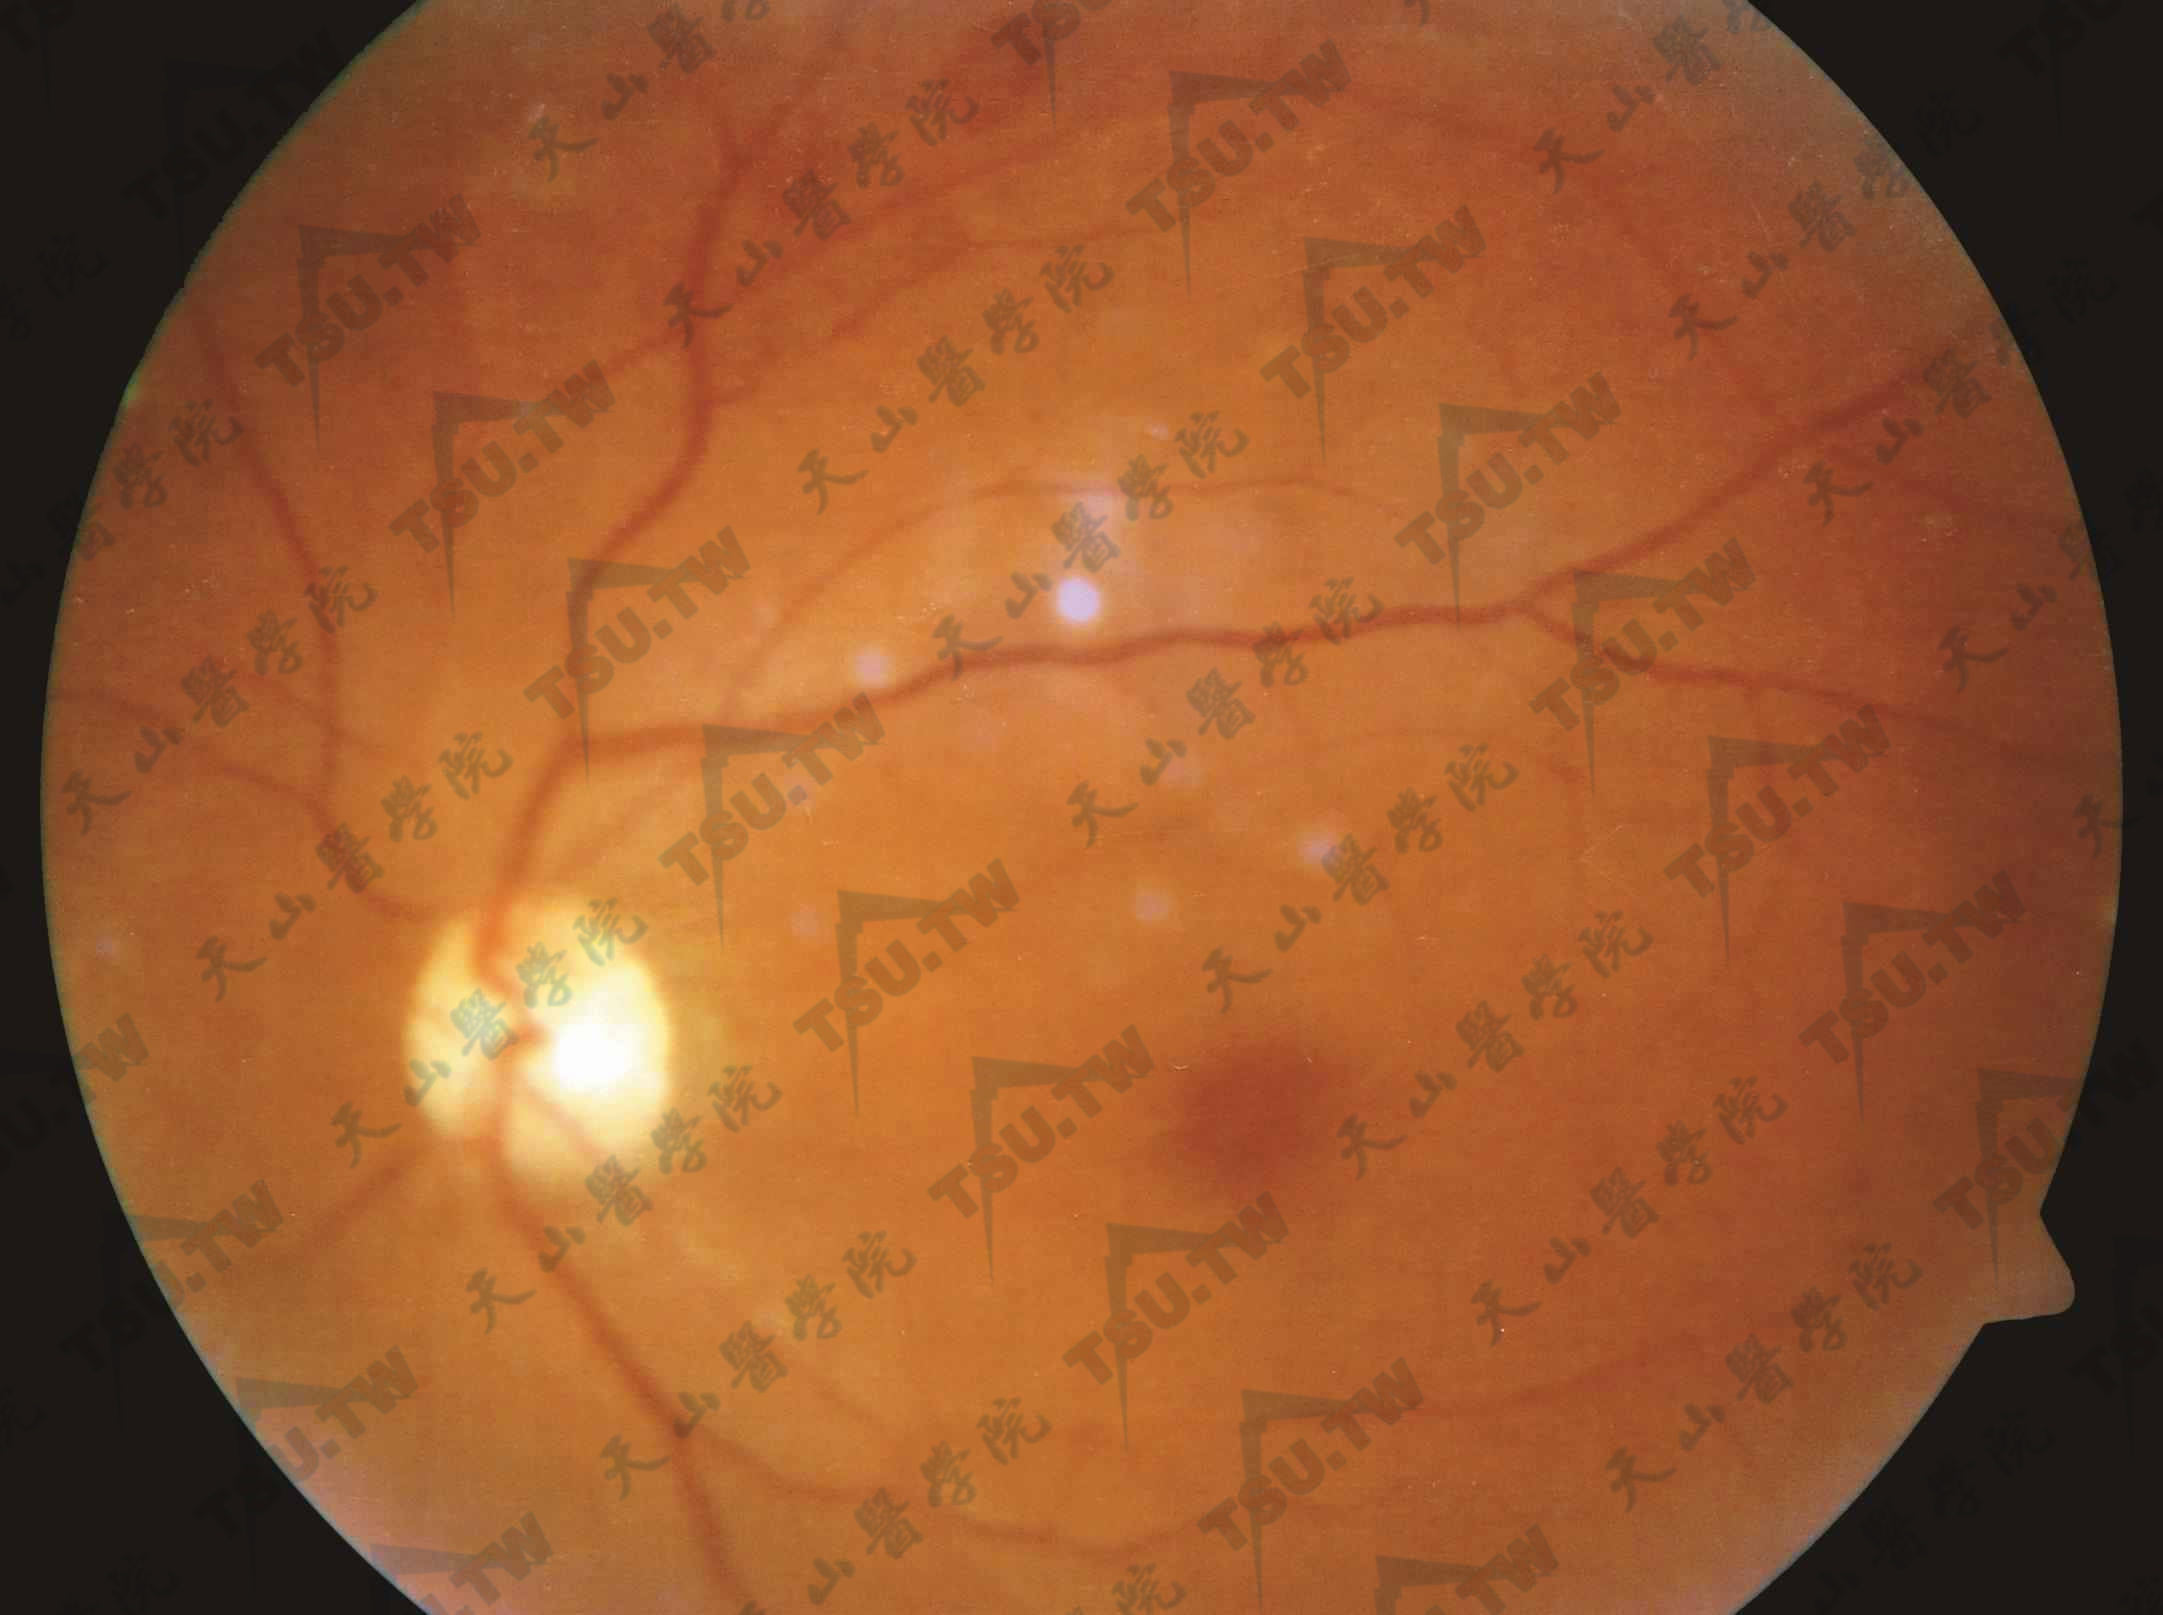  单纯型糖尿病视网膜病变；注：可见微血管瘤，散在点状和片状出血